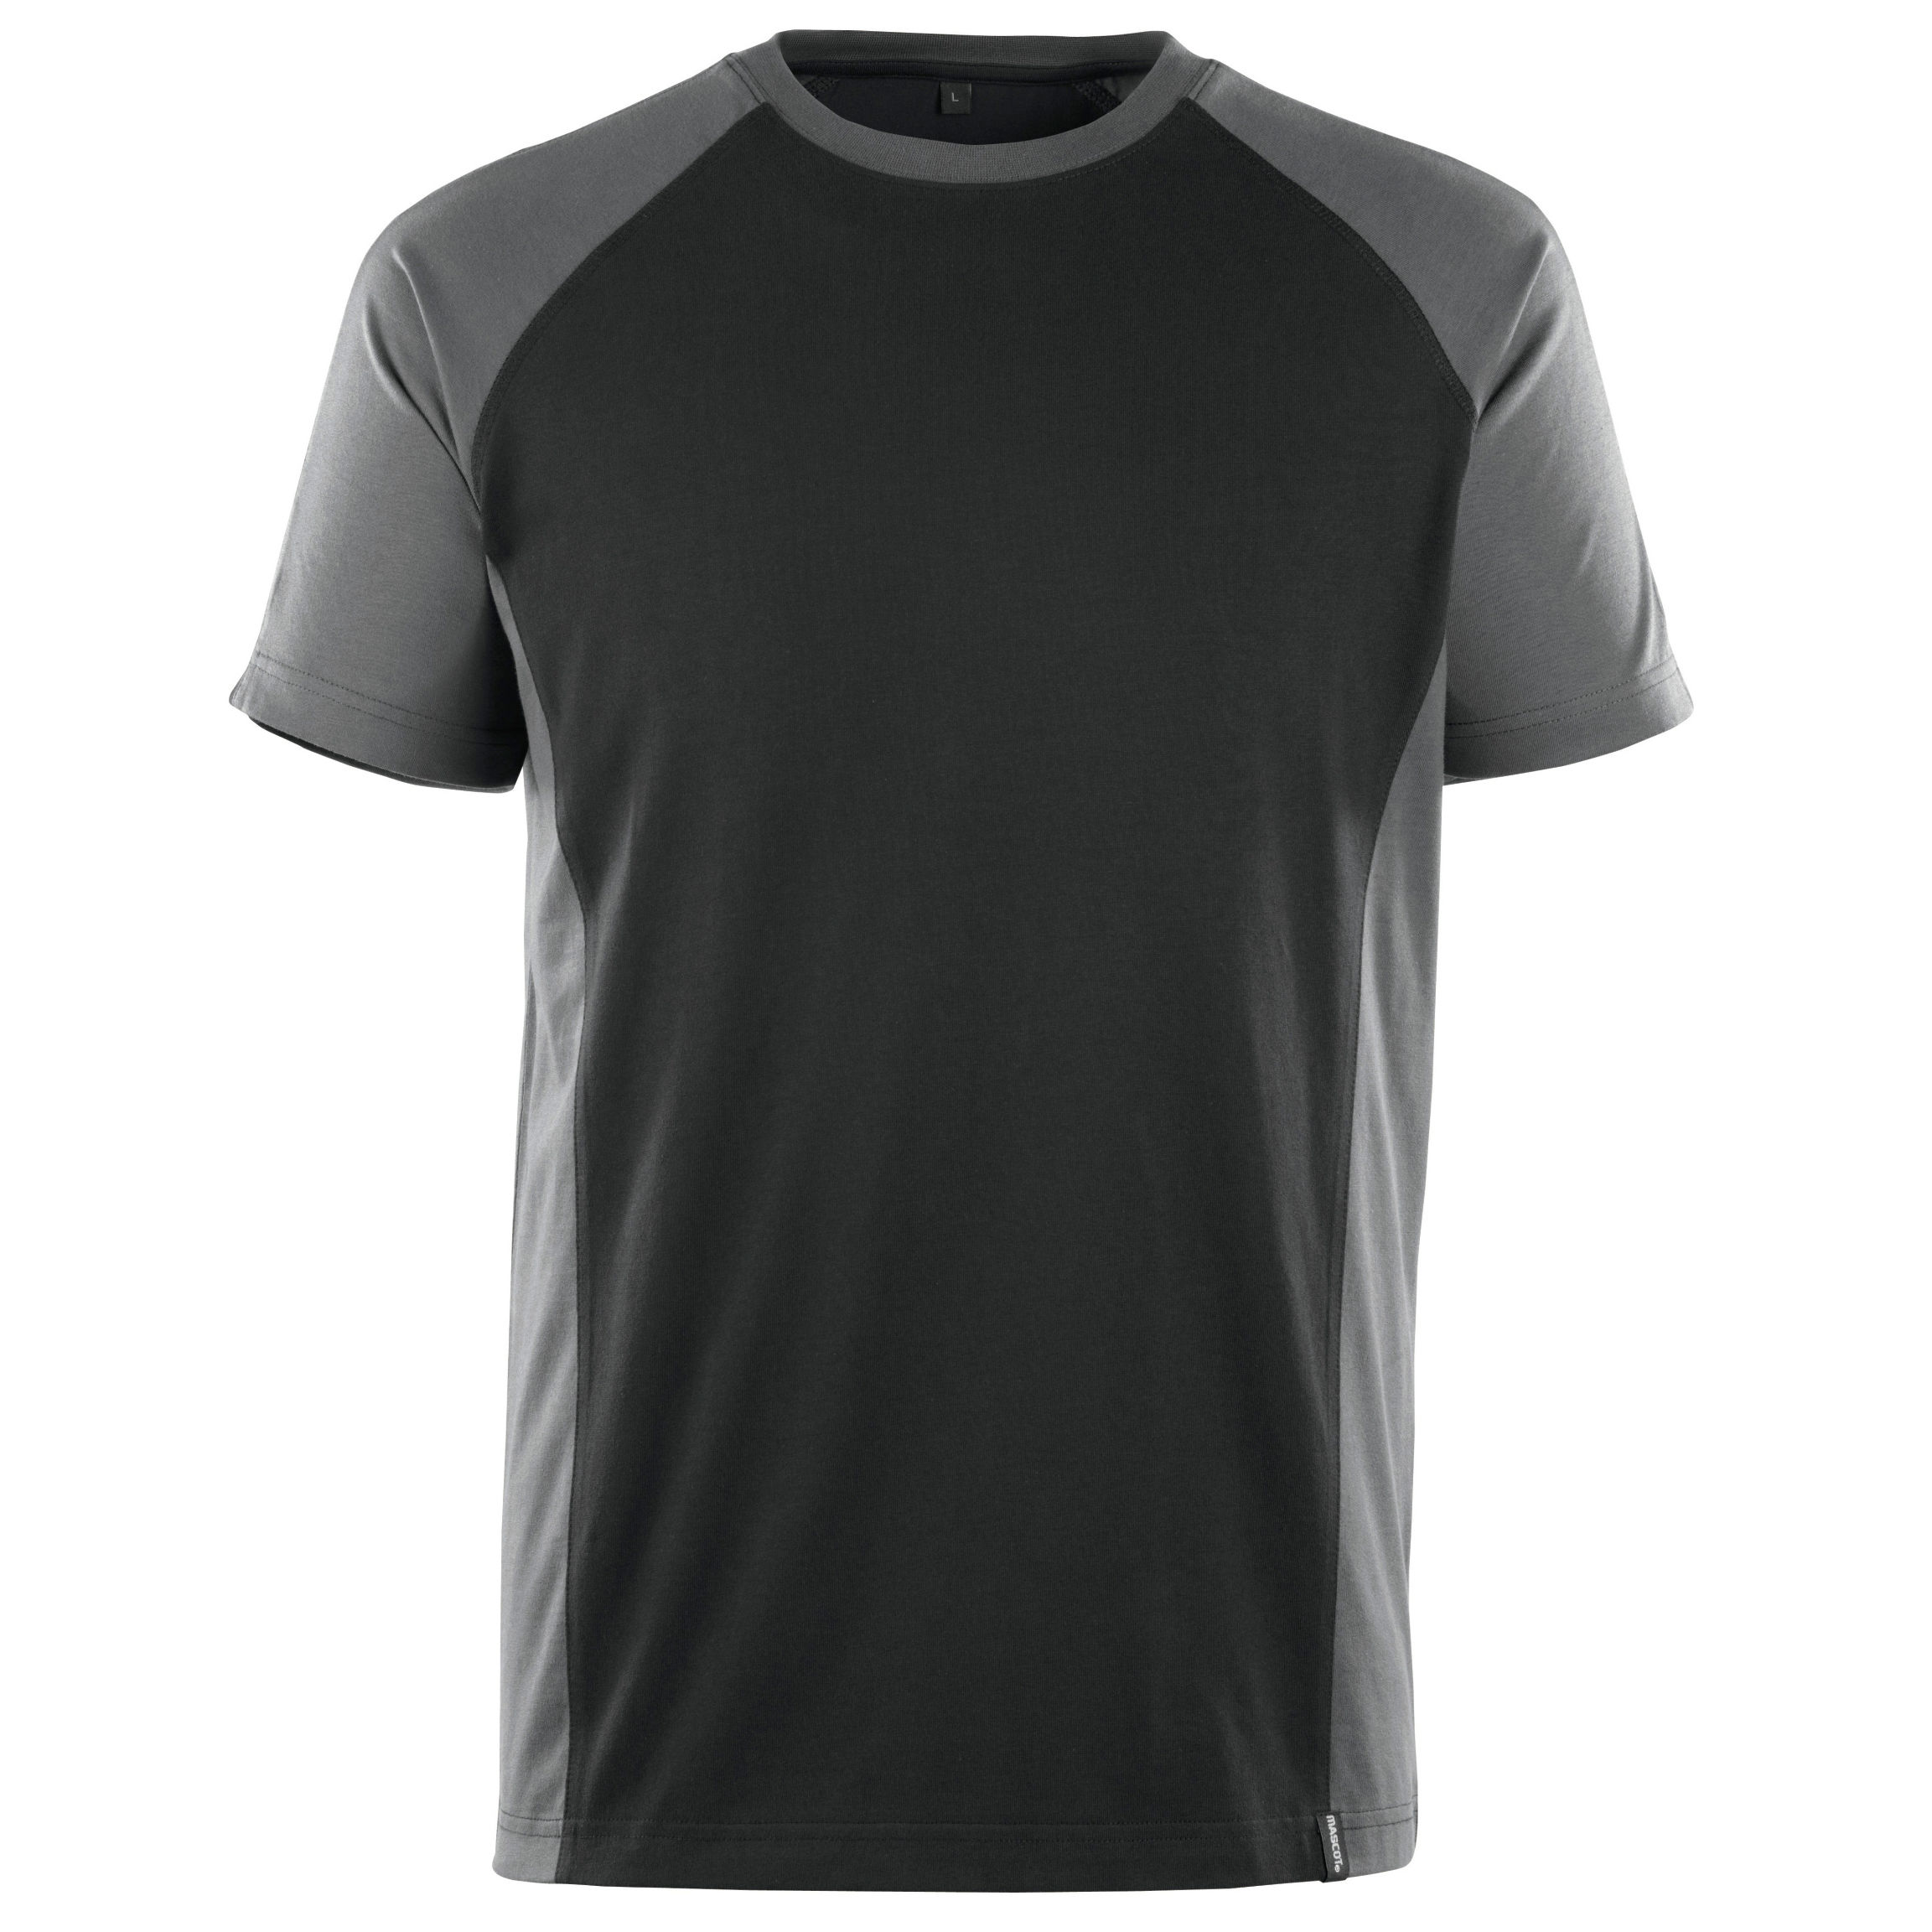 Mascot Potsdam T-Shirt Black/Dark Anthracite